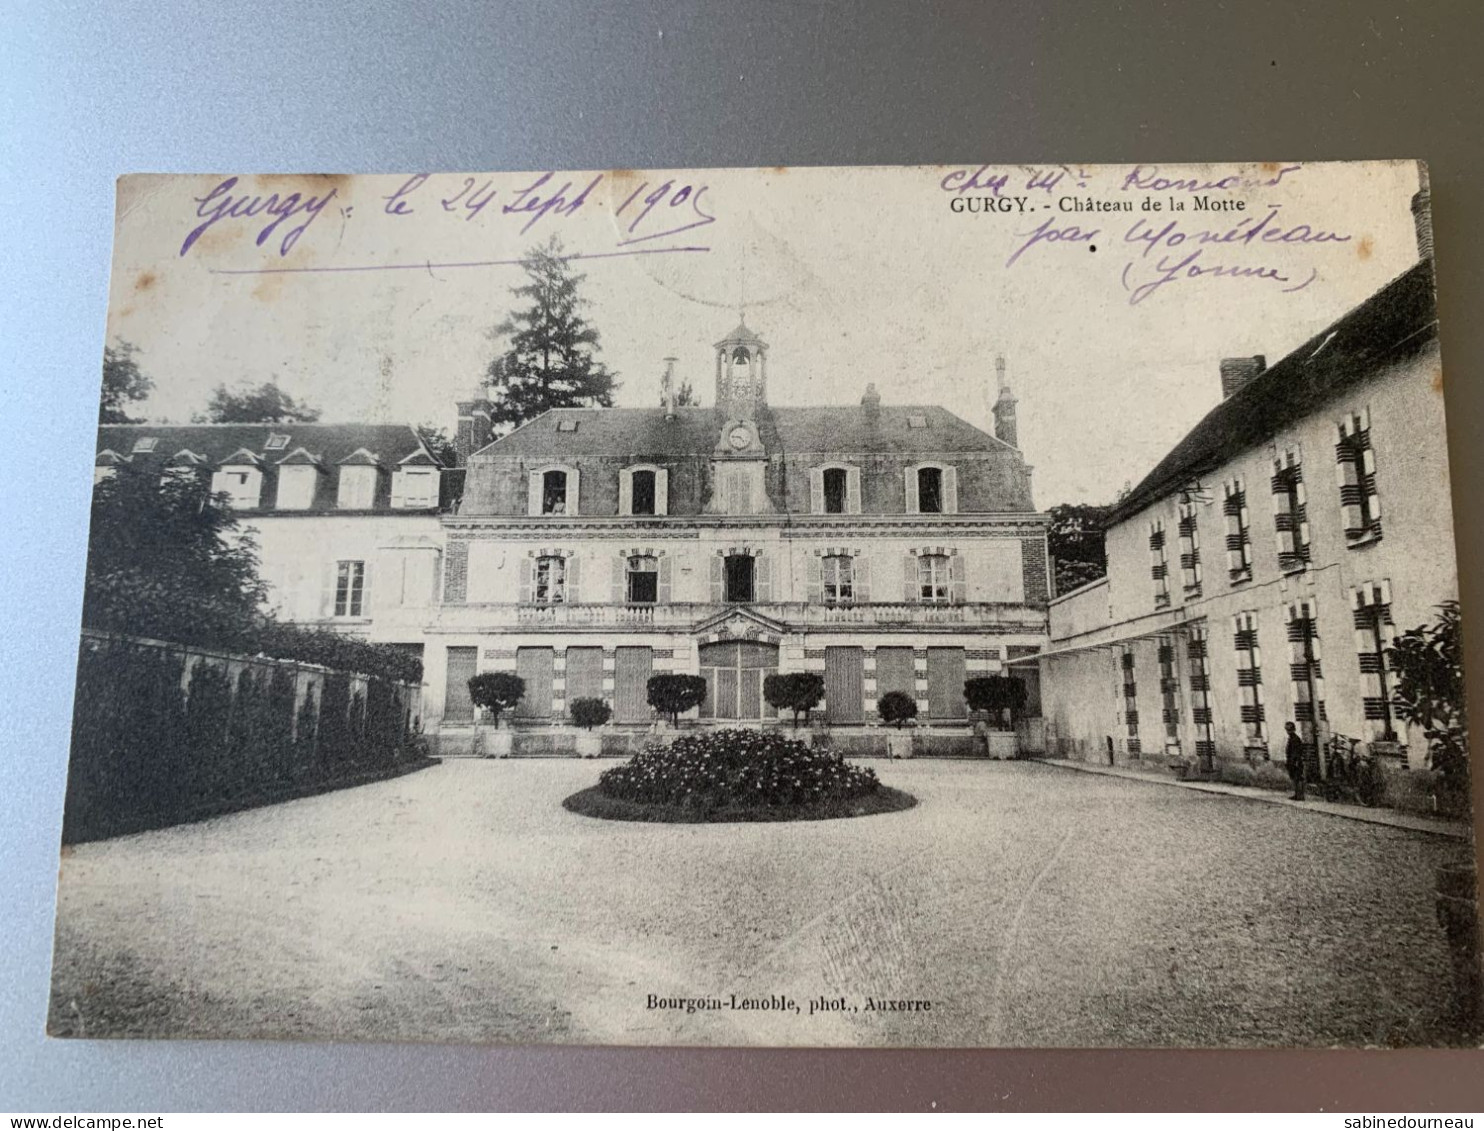 GURGY CHATEAU DE LA MOTTE BOURGOIN-LENOBLE PHOT 89 YONNE CPA 1905 - Gurgy